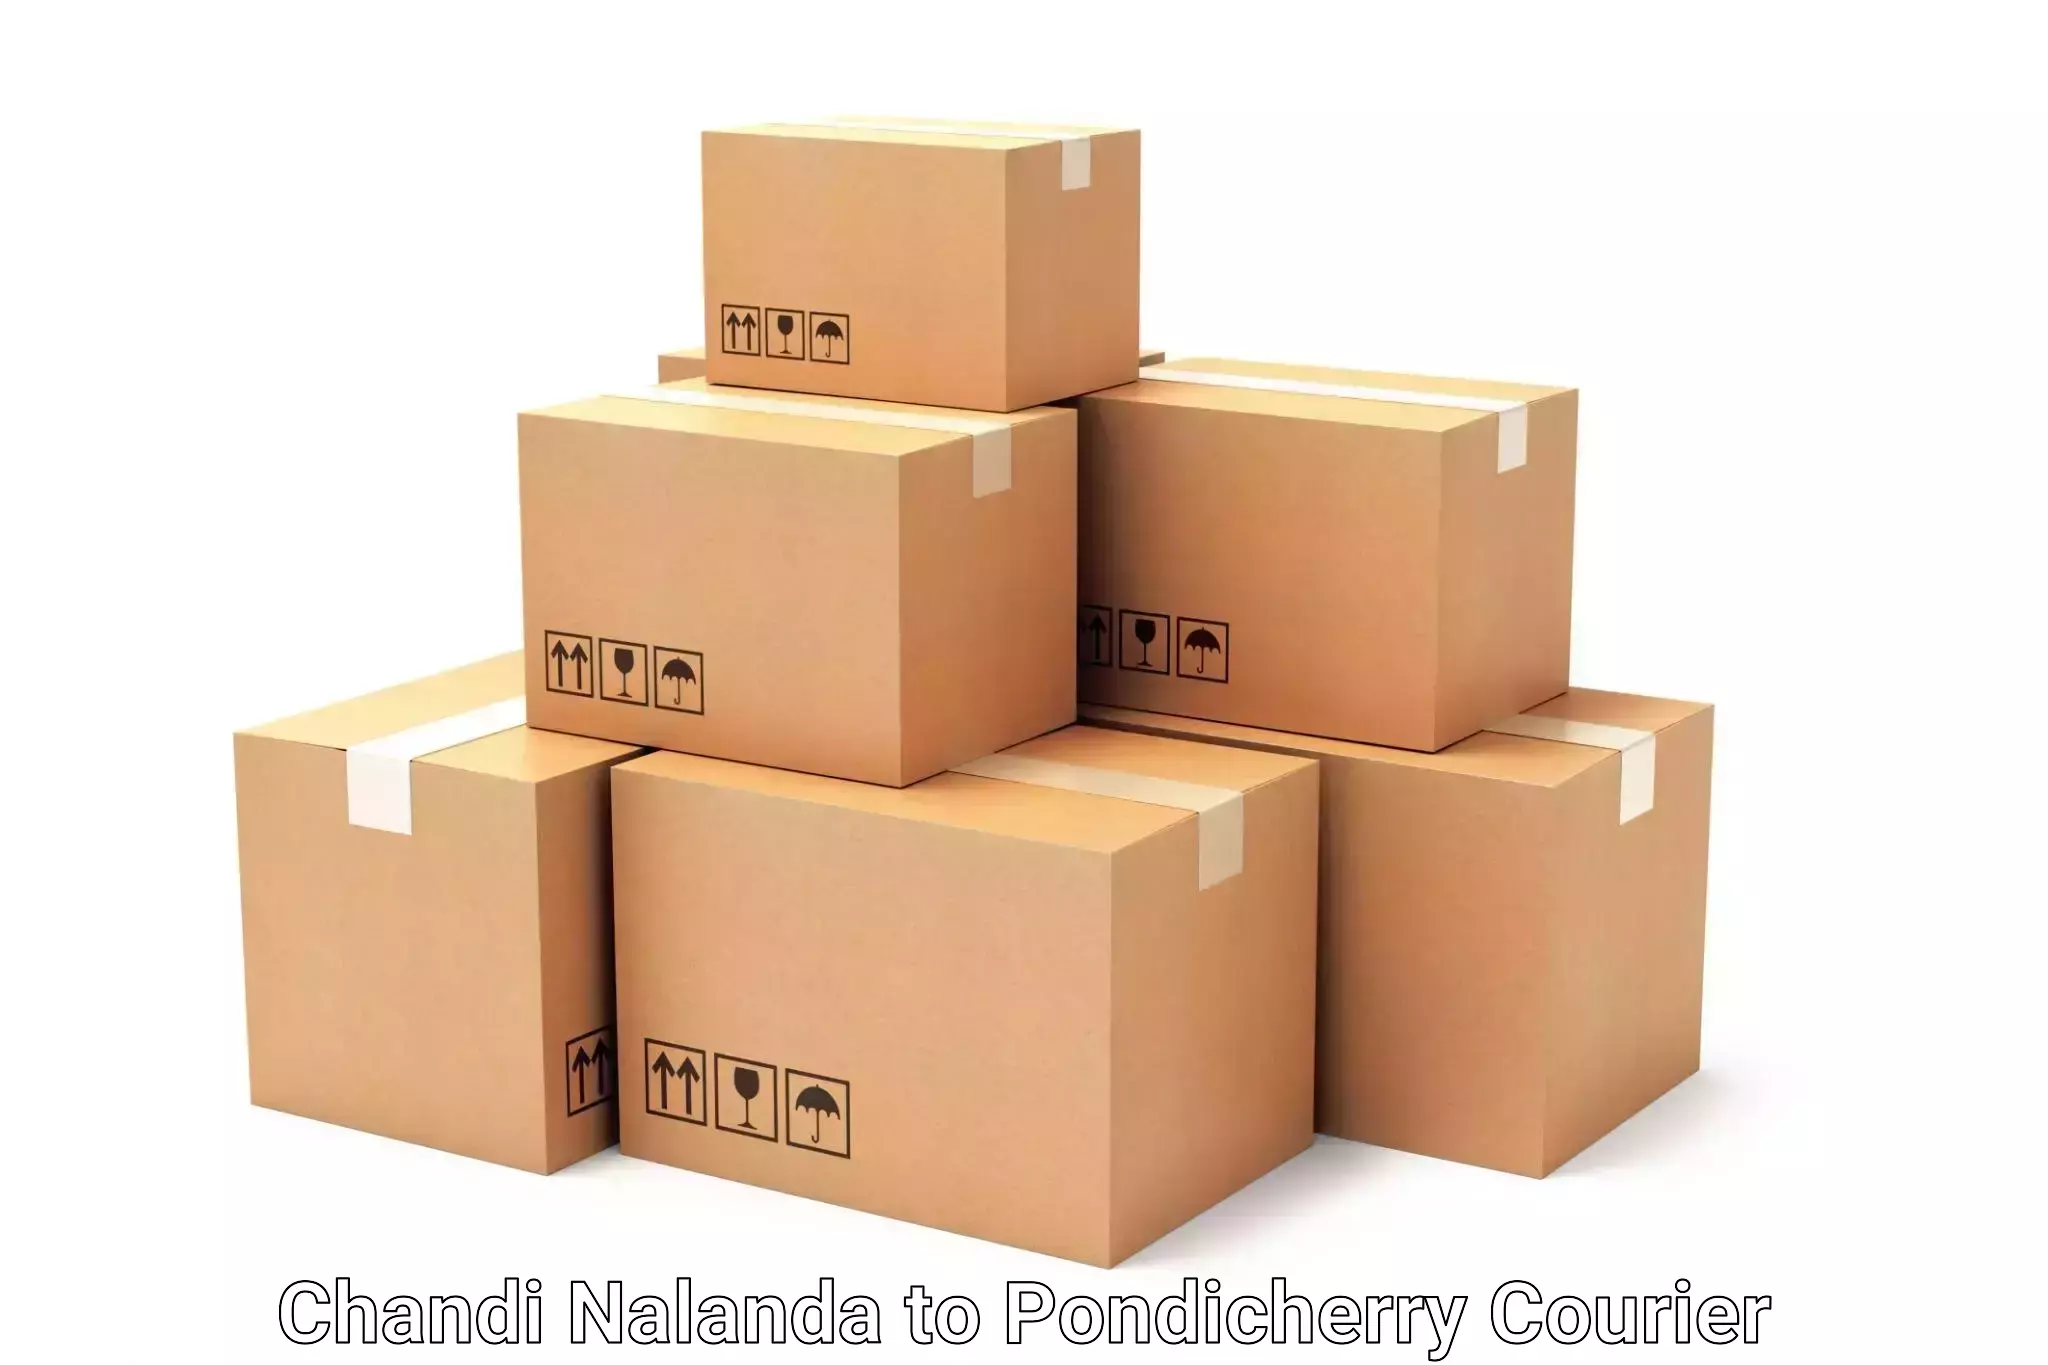 Luggage delivery system Chandi Nalanda to Pondicherry